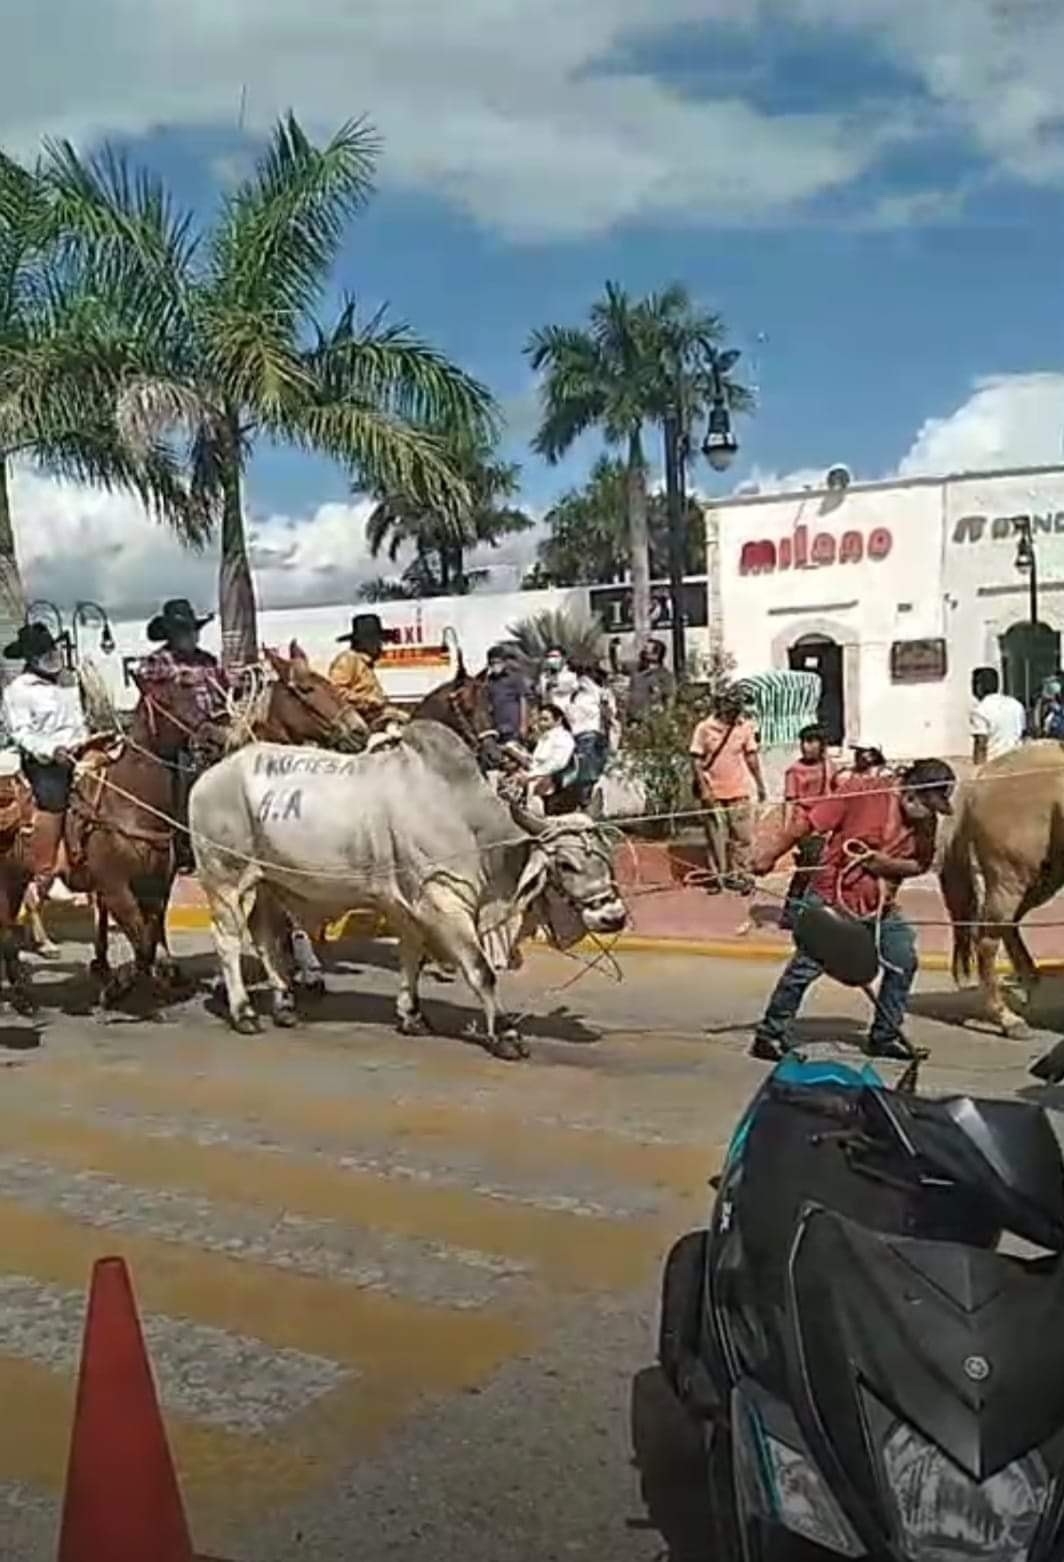 Arrastran a un toro en la calle por fiesta tradicional en Tizimín, Yucatán